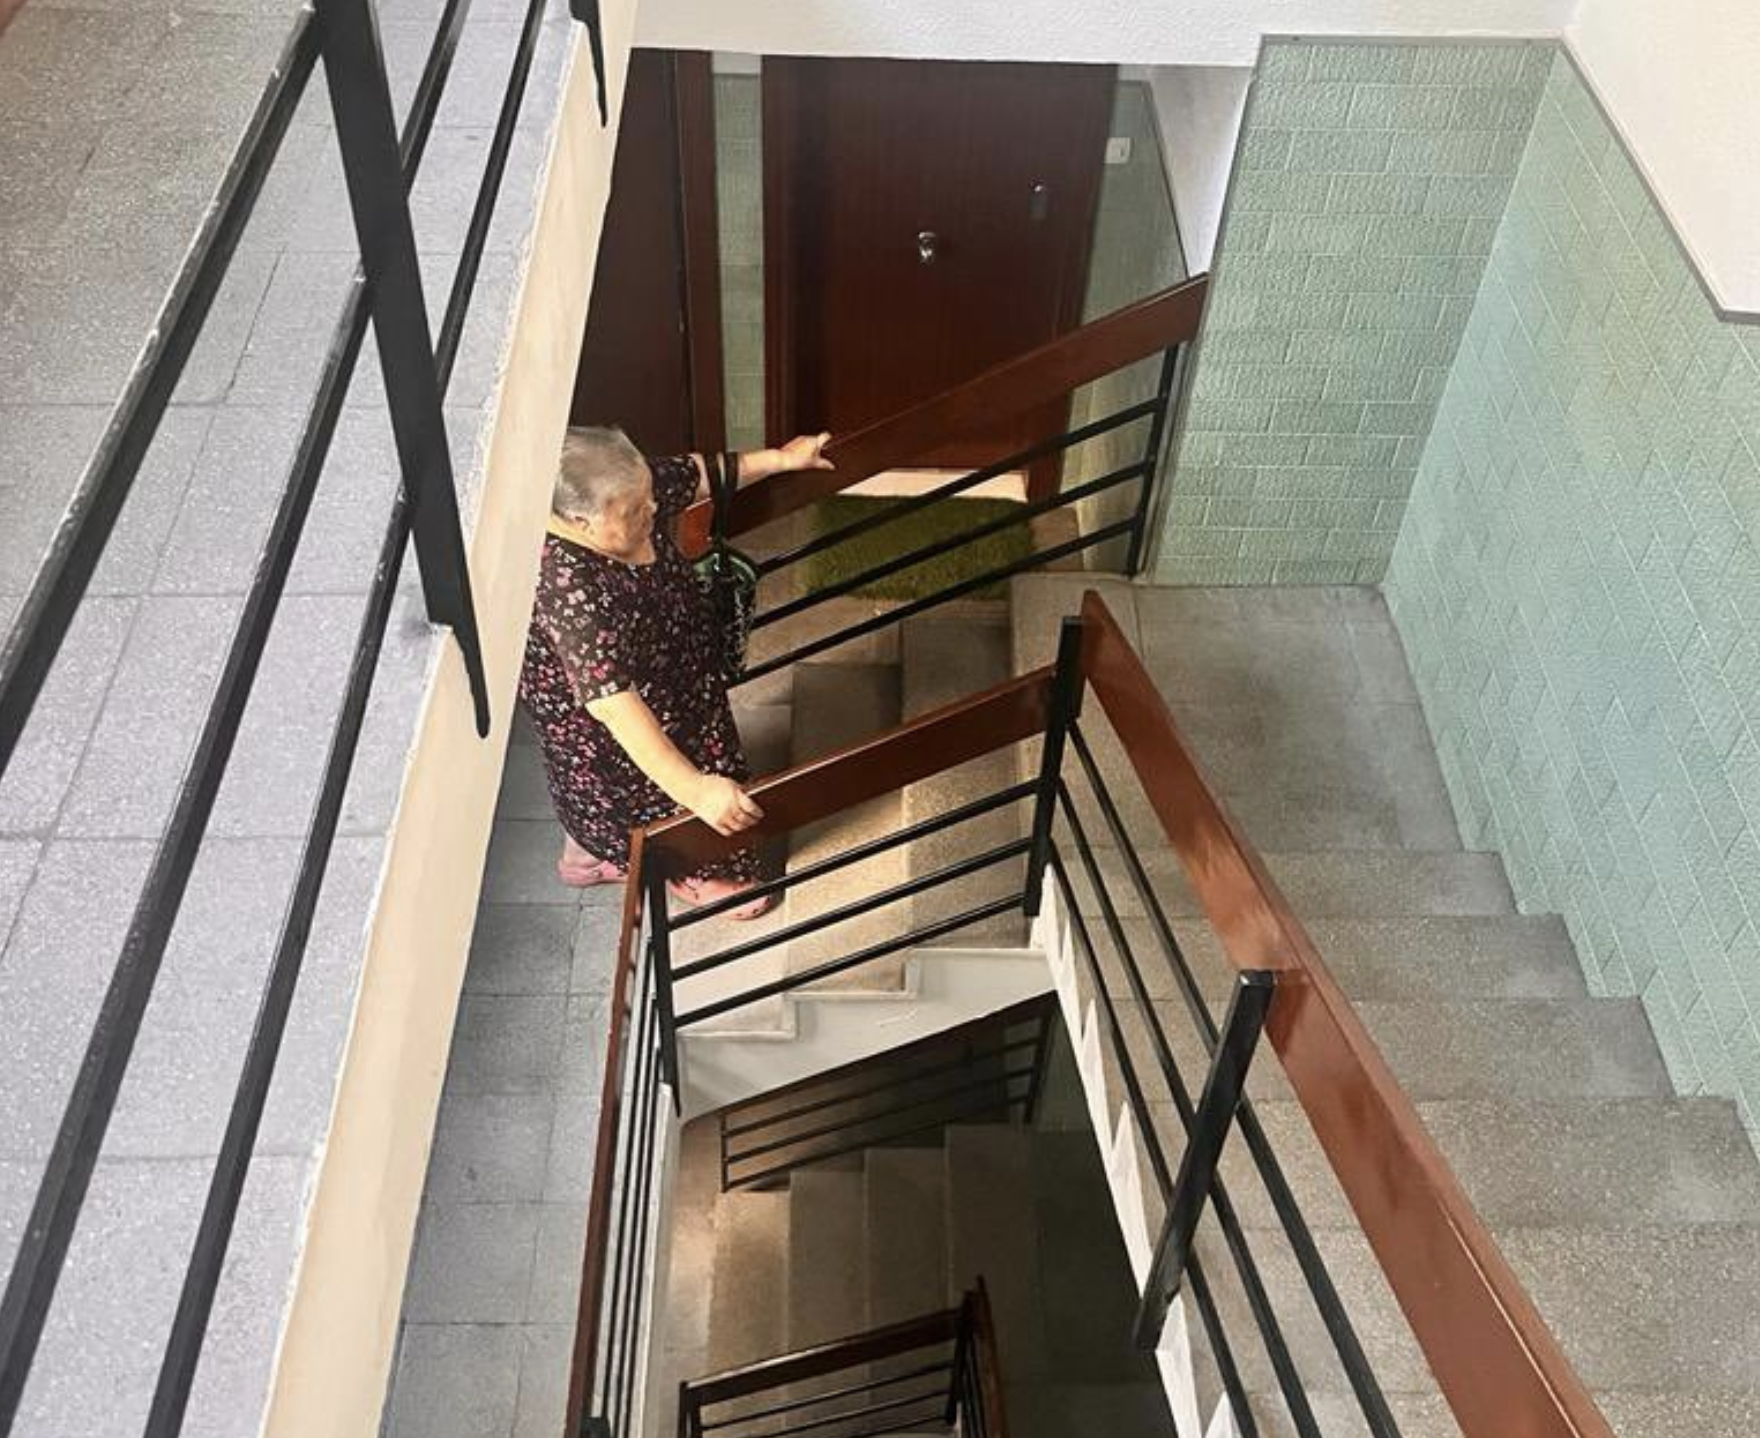 Paquita y su vida en un cuarto piso sin ascensor: el drama diario de muchos mayores